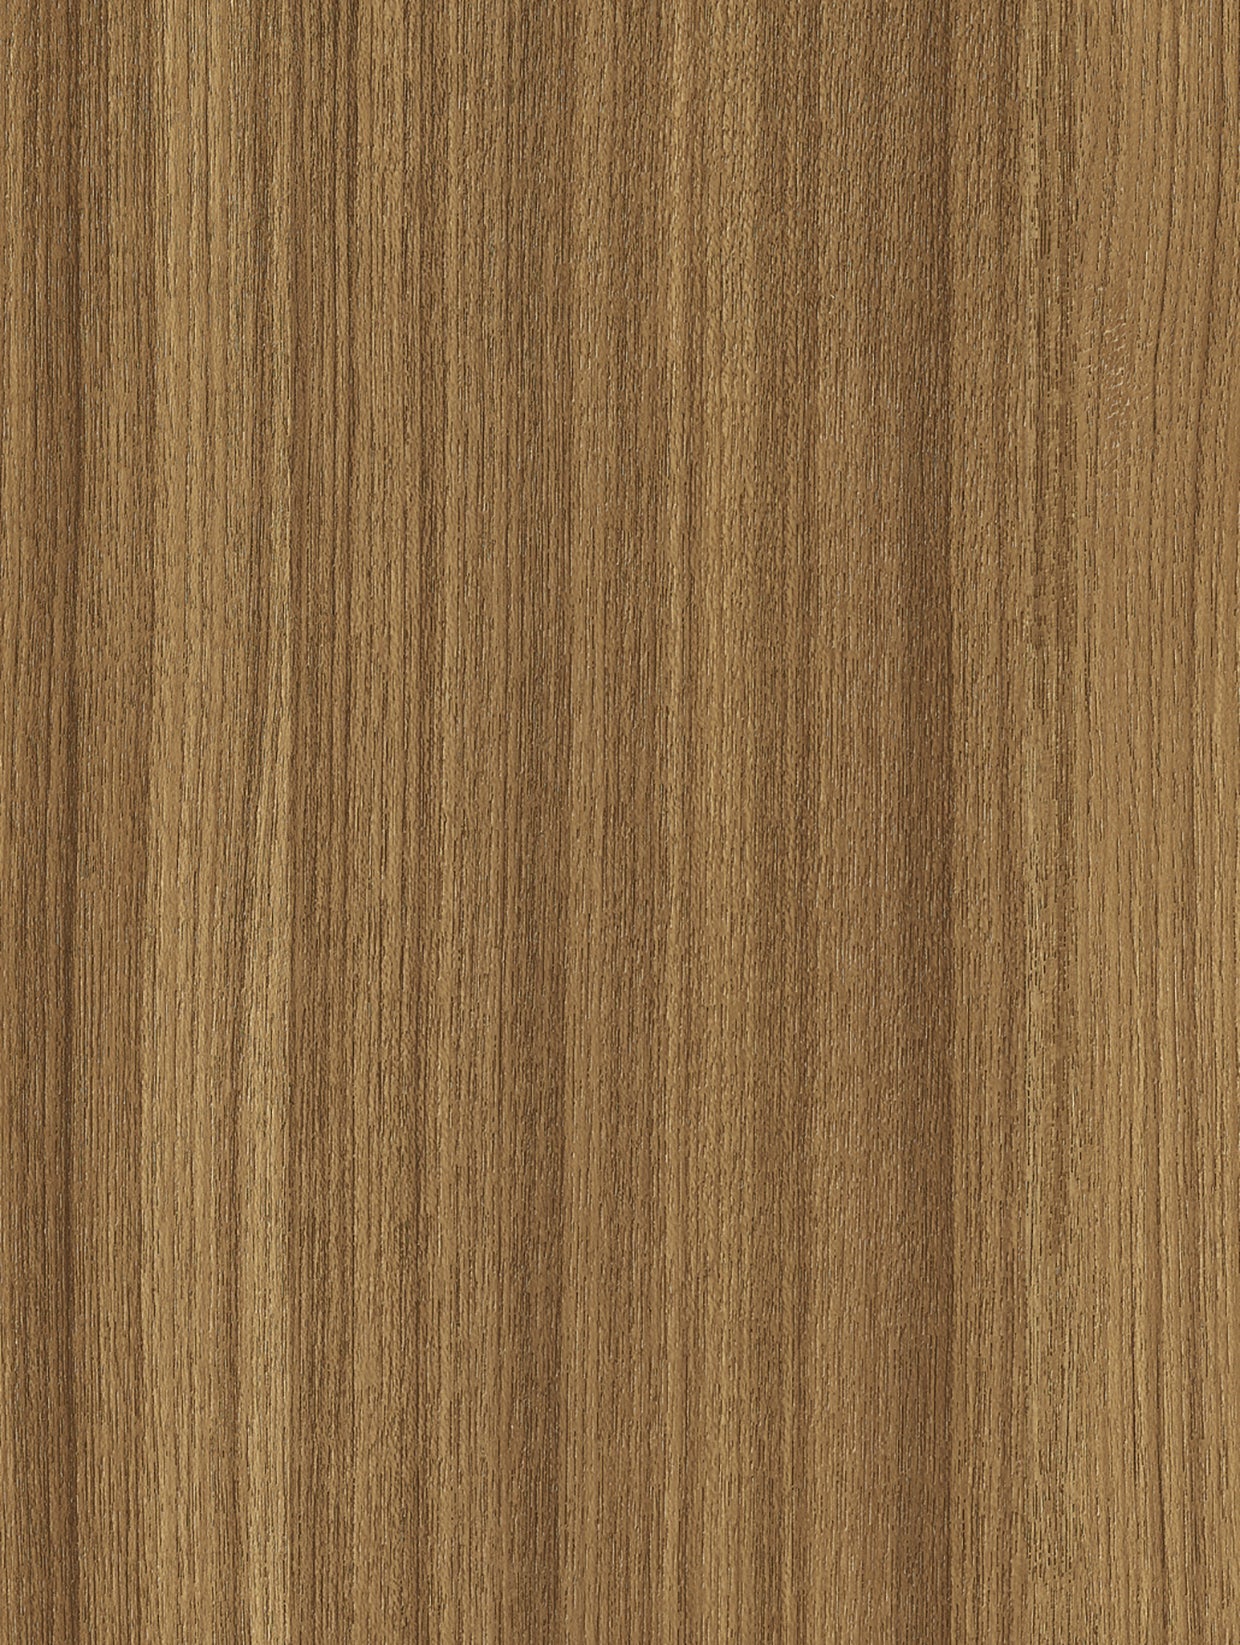 Wood - Medium | Holzdekor Mittel Rost/Soft/Strukturiert Musterfolie A3